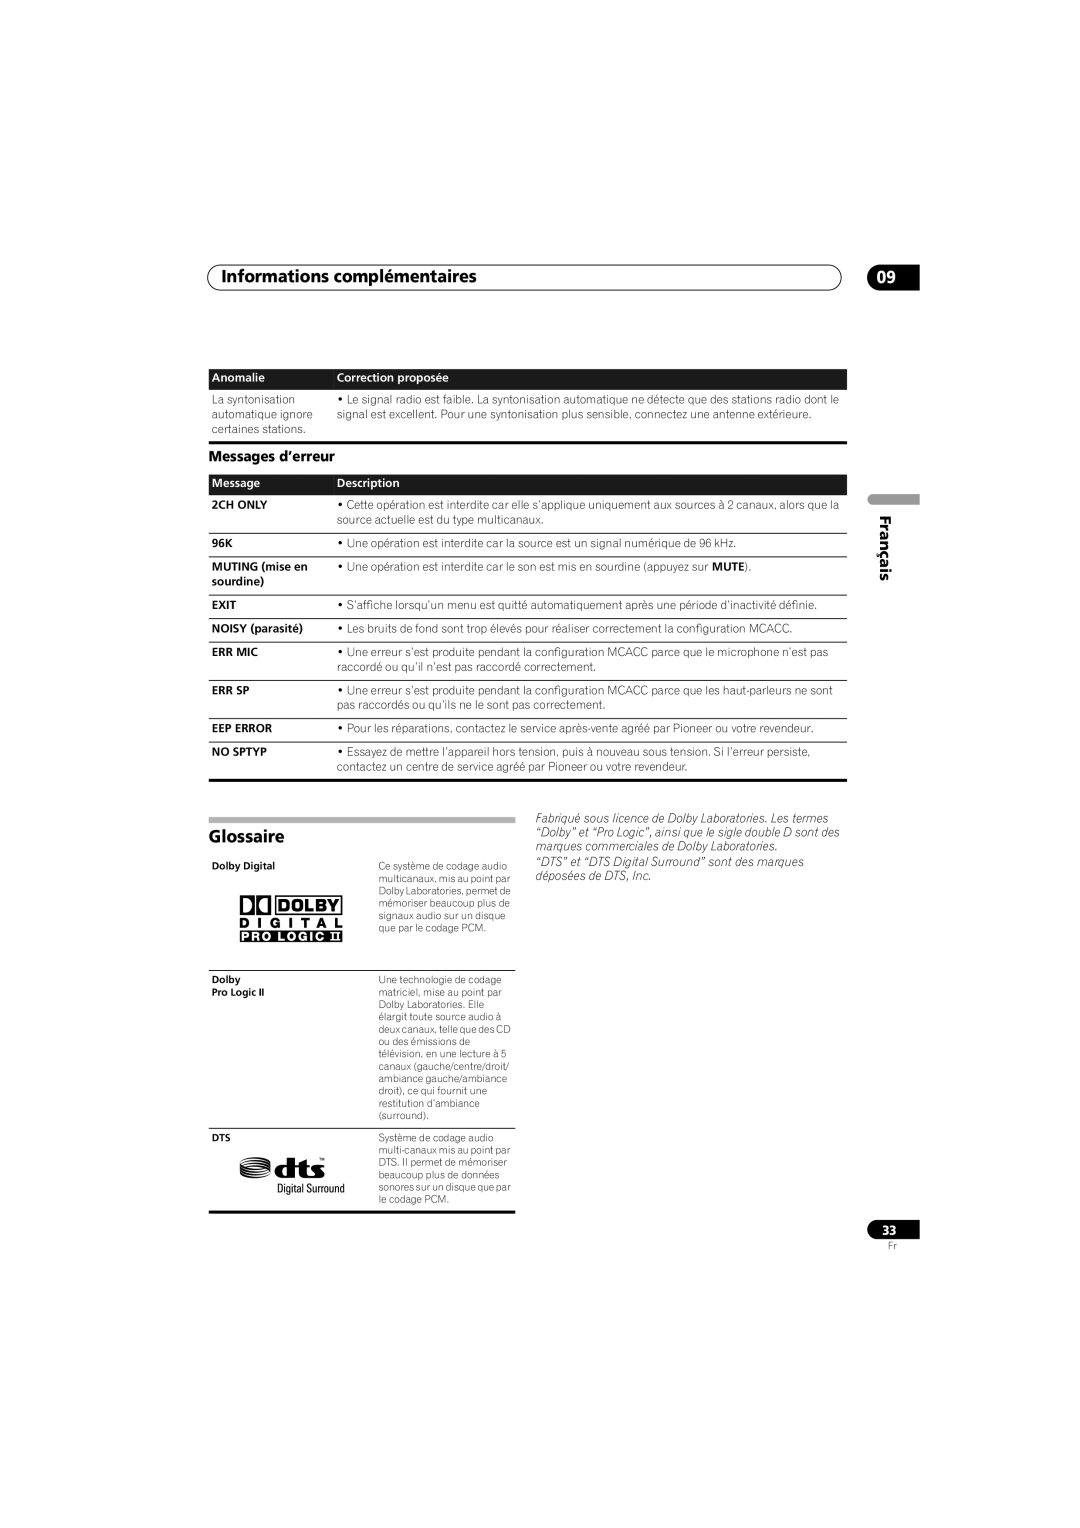 Pioneer SX-SW570 Messages d’erreur, Informations complémentaires, Français, Anomalie, Correction proposée, Description 